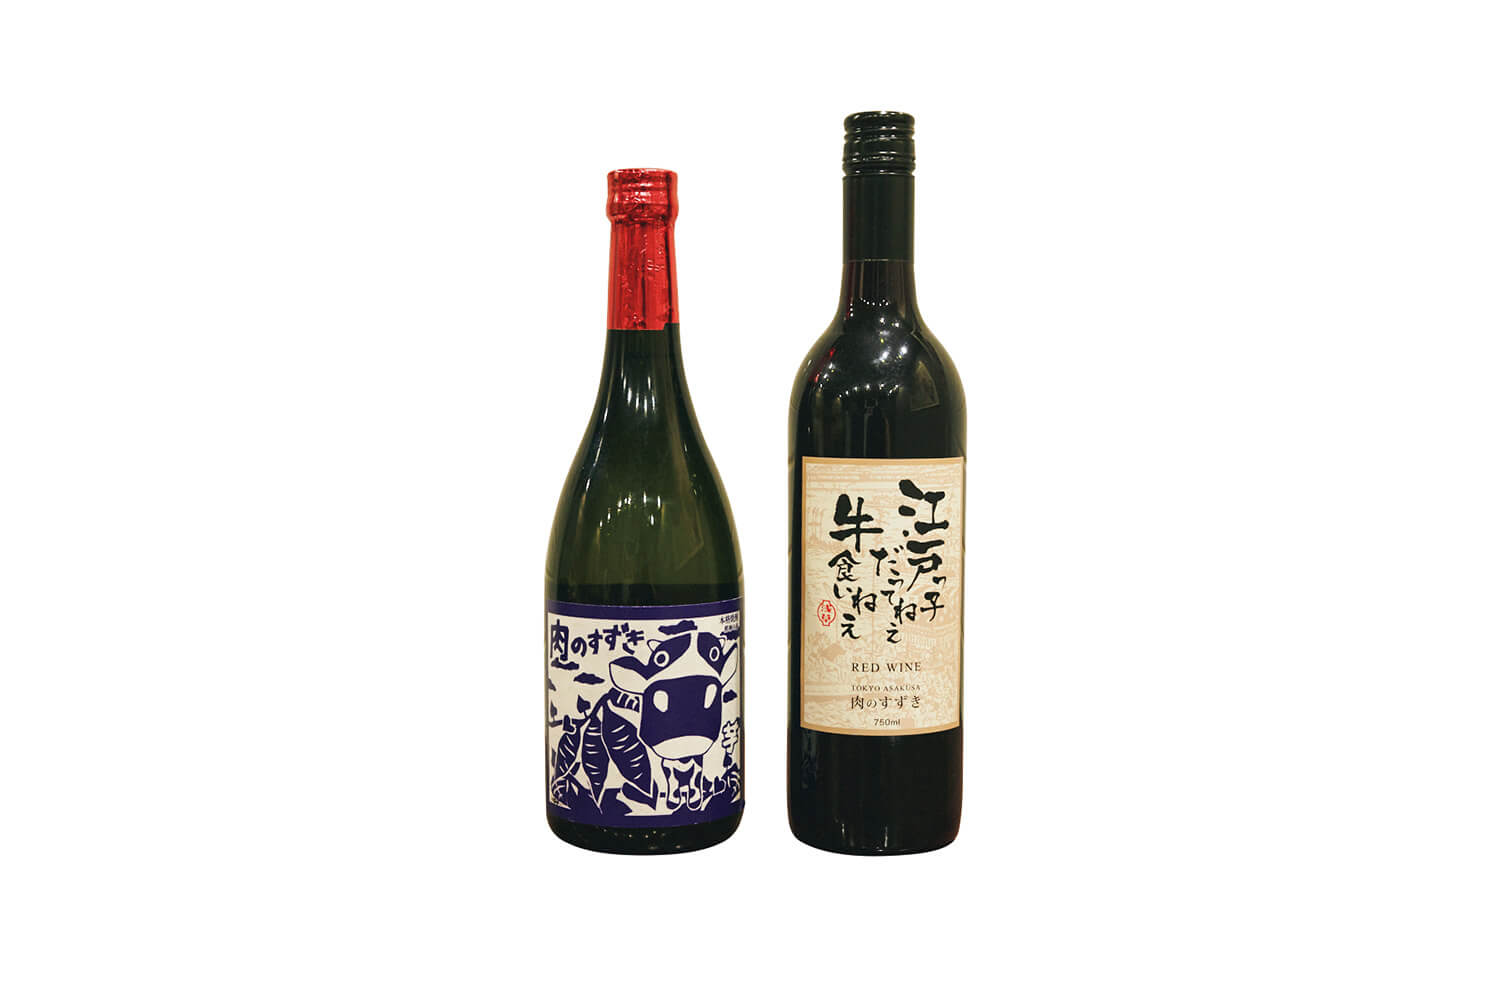 東京 浅草 〈肉のすずき〉 シラーズの赤ワインと〈天星酒造〉の芋焼酎